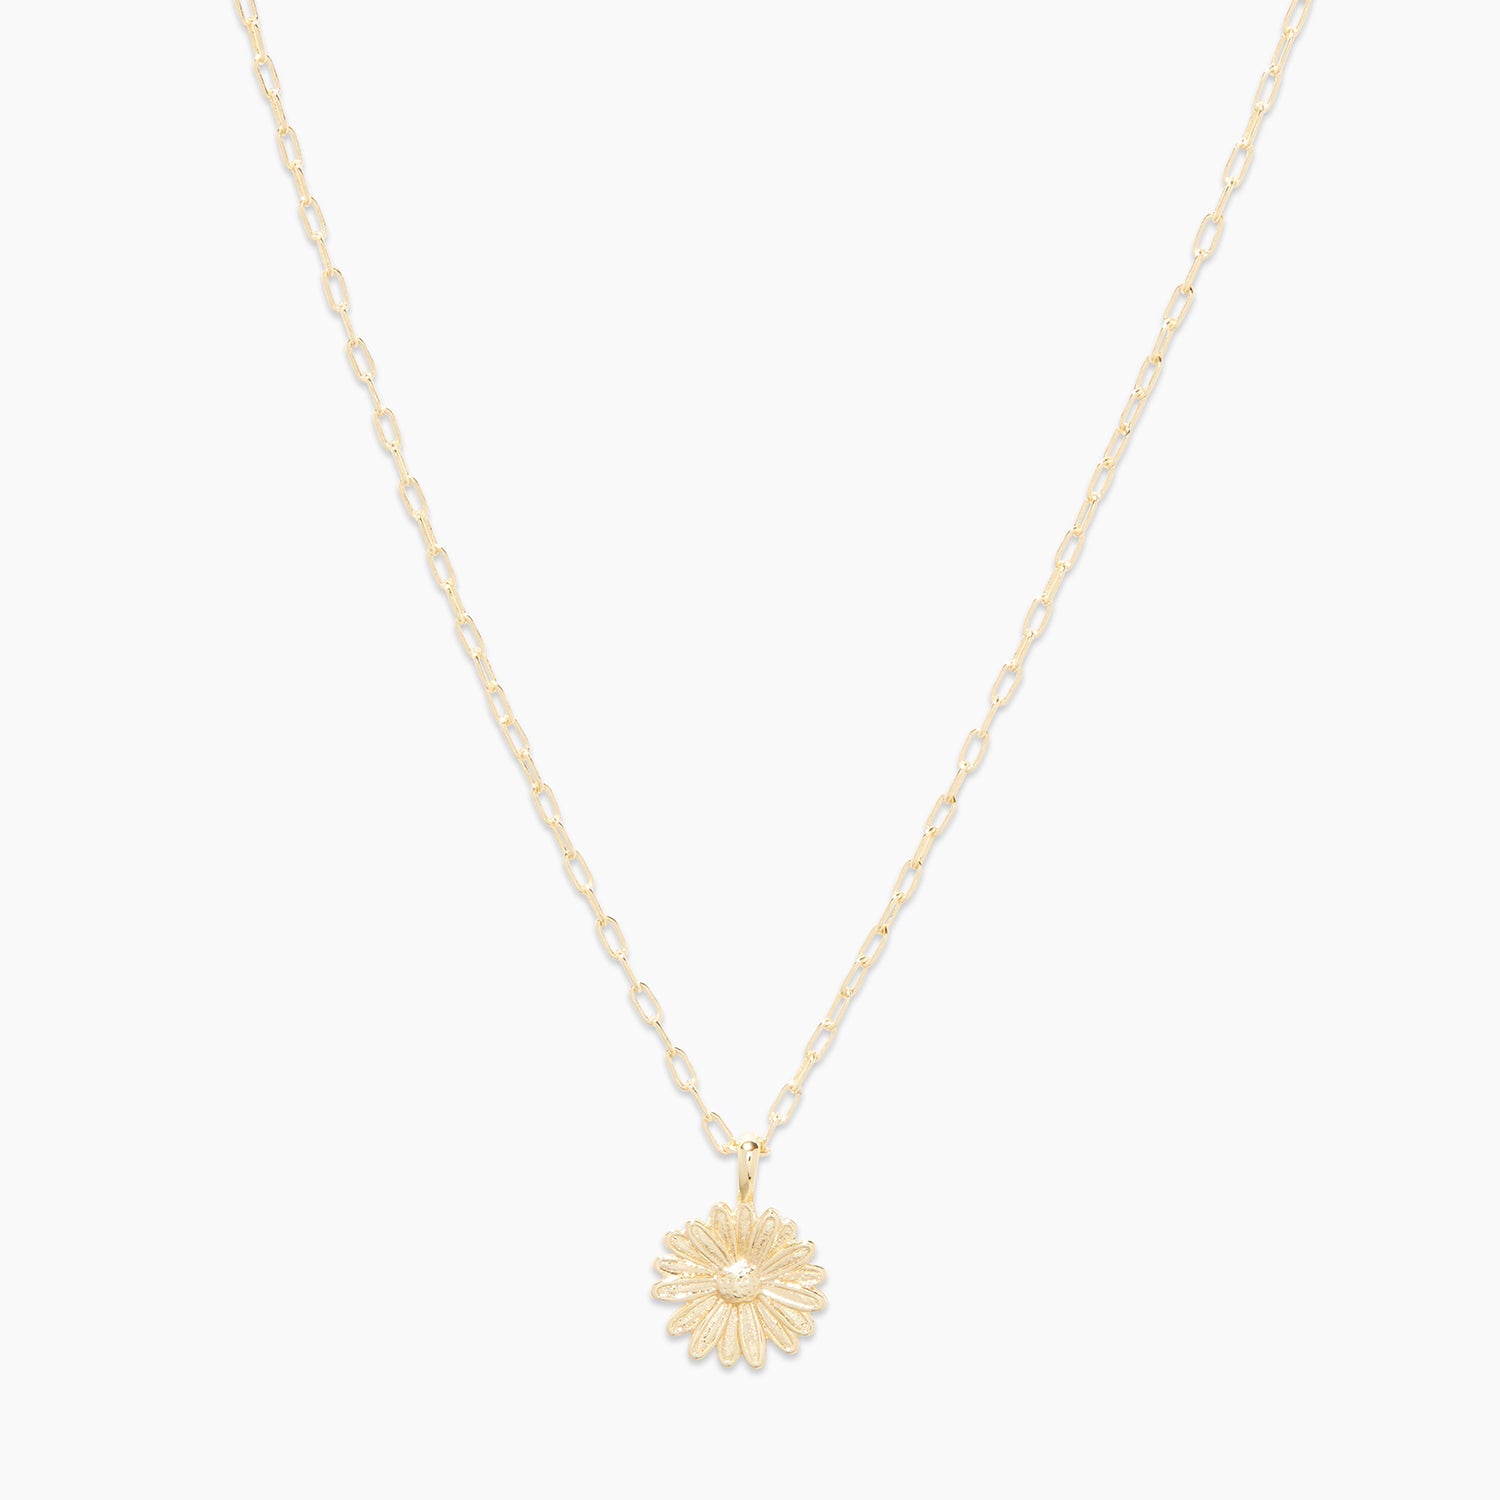 Roberto Coin 18K Yellow Gold Daisy Diamond Pendant Necklace, 17.5